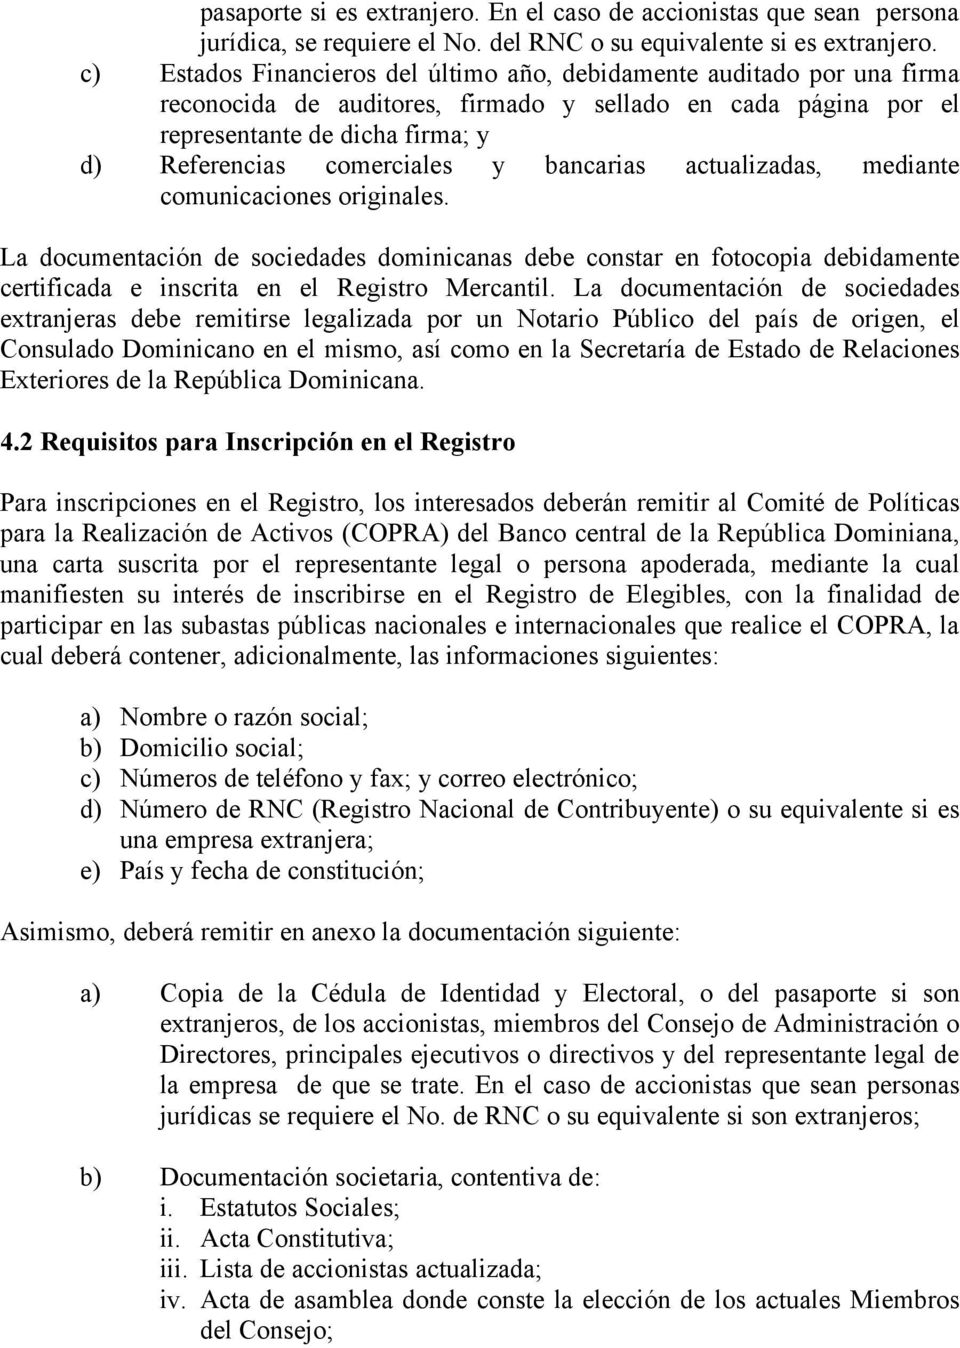 bancarias actualizadas, mediante comunicaciones originales. La documentación de sociedades dominicanas debe constar en fotocopia debidamente certificada e inscrita en el Registro Mercantil.